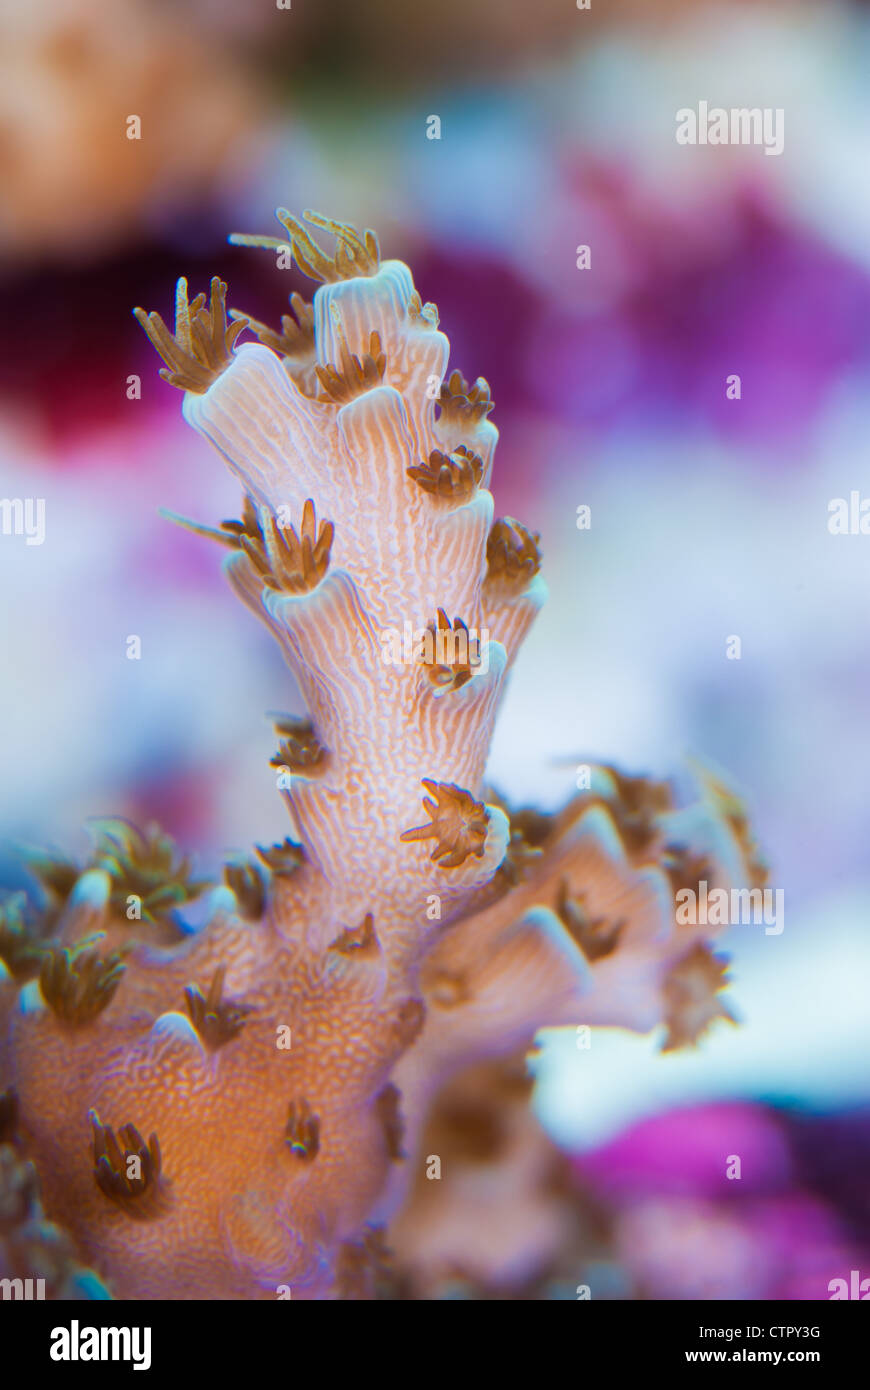 Cerca de Acropora pólipos coralinos abrirá mostrando conectar canales y zooxantelas Foto de stock